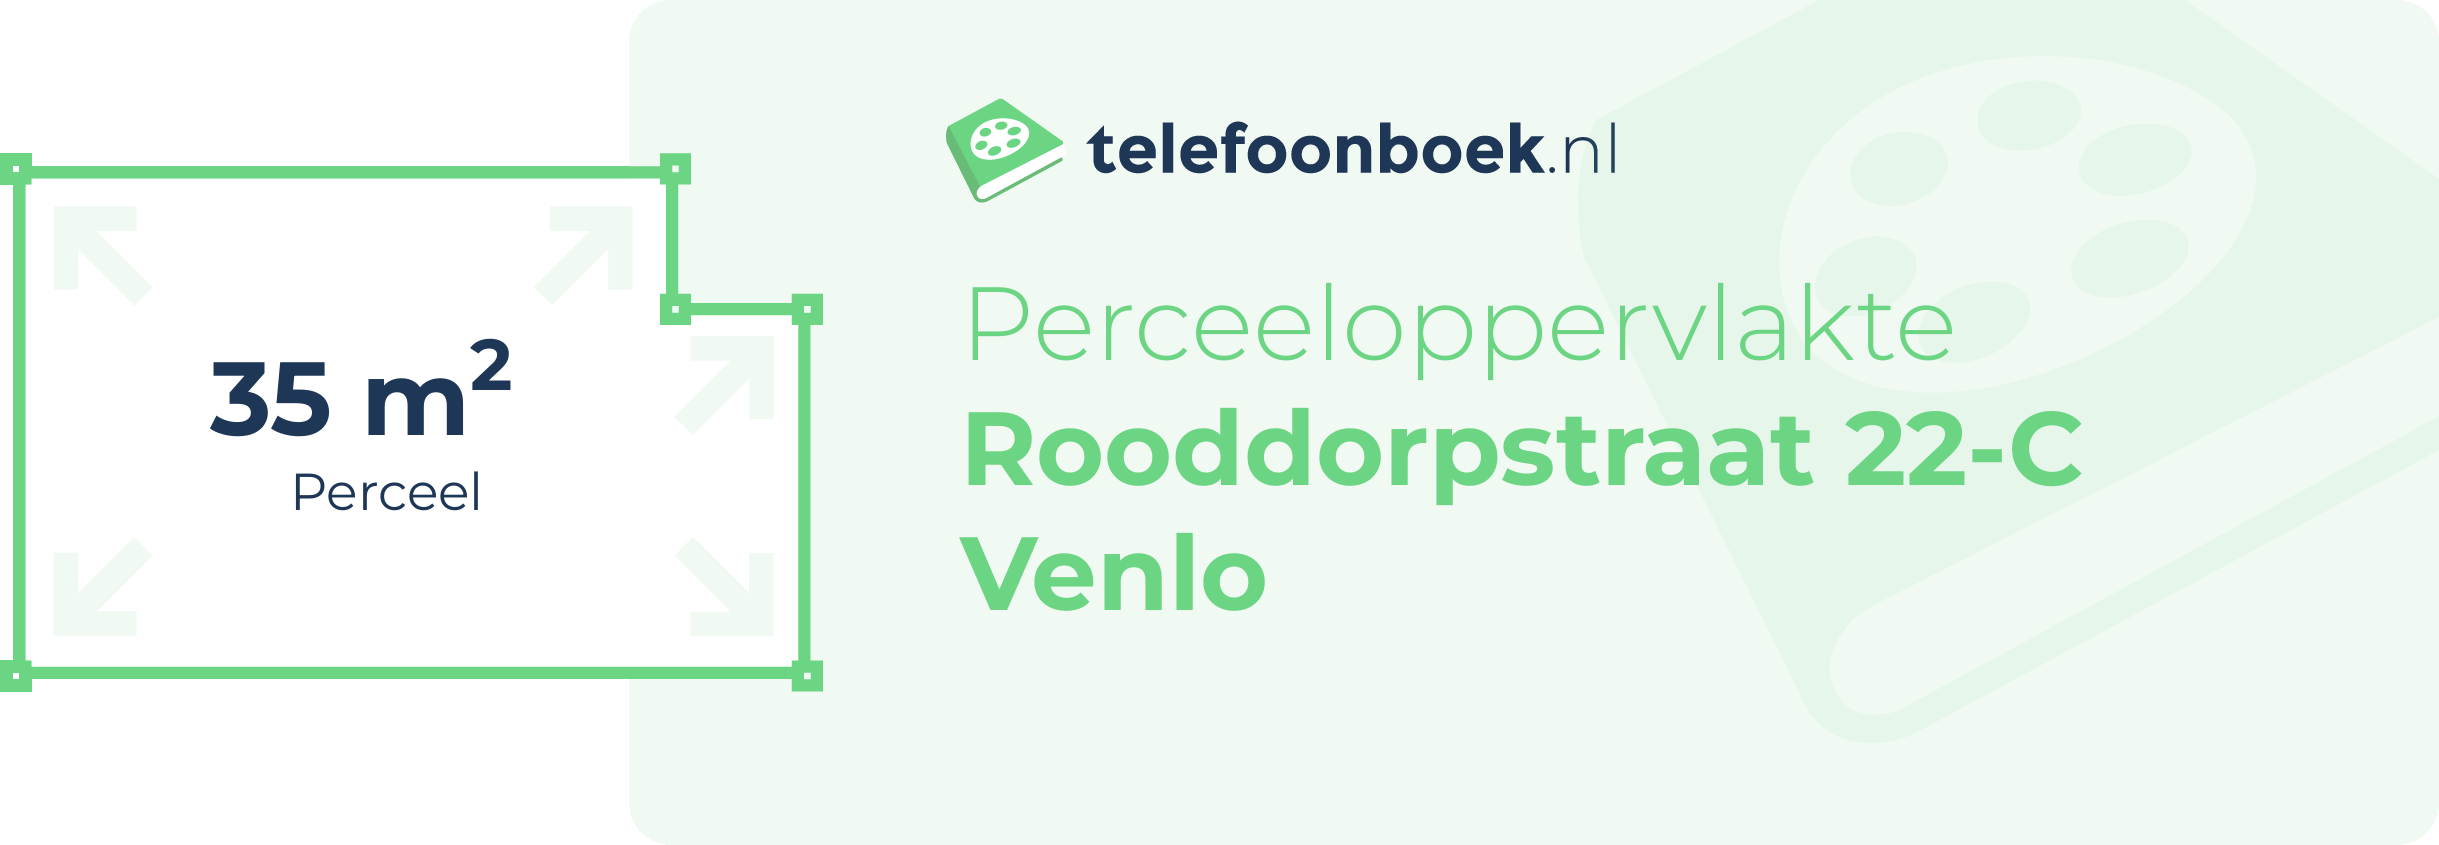 Perceeloppervlakte Rooddorpstraat 22-C Venlo